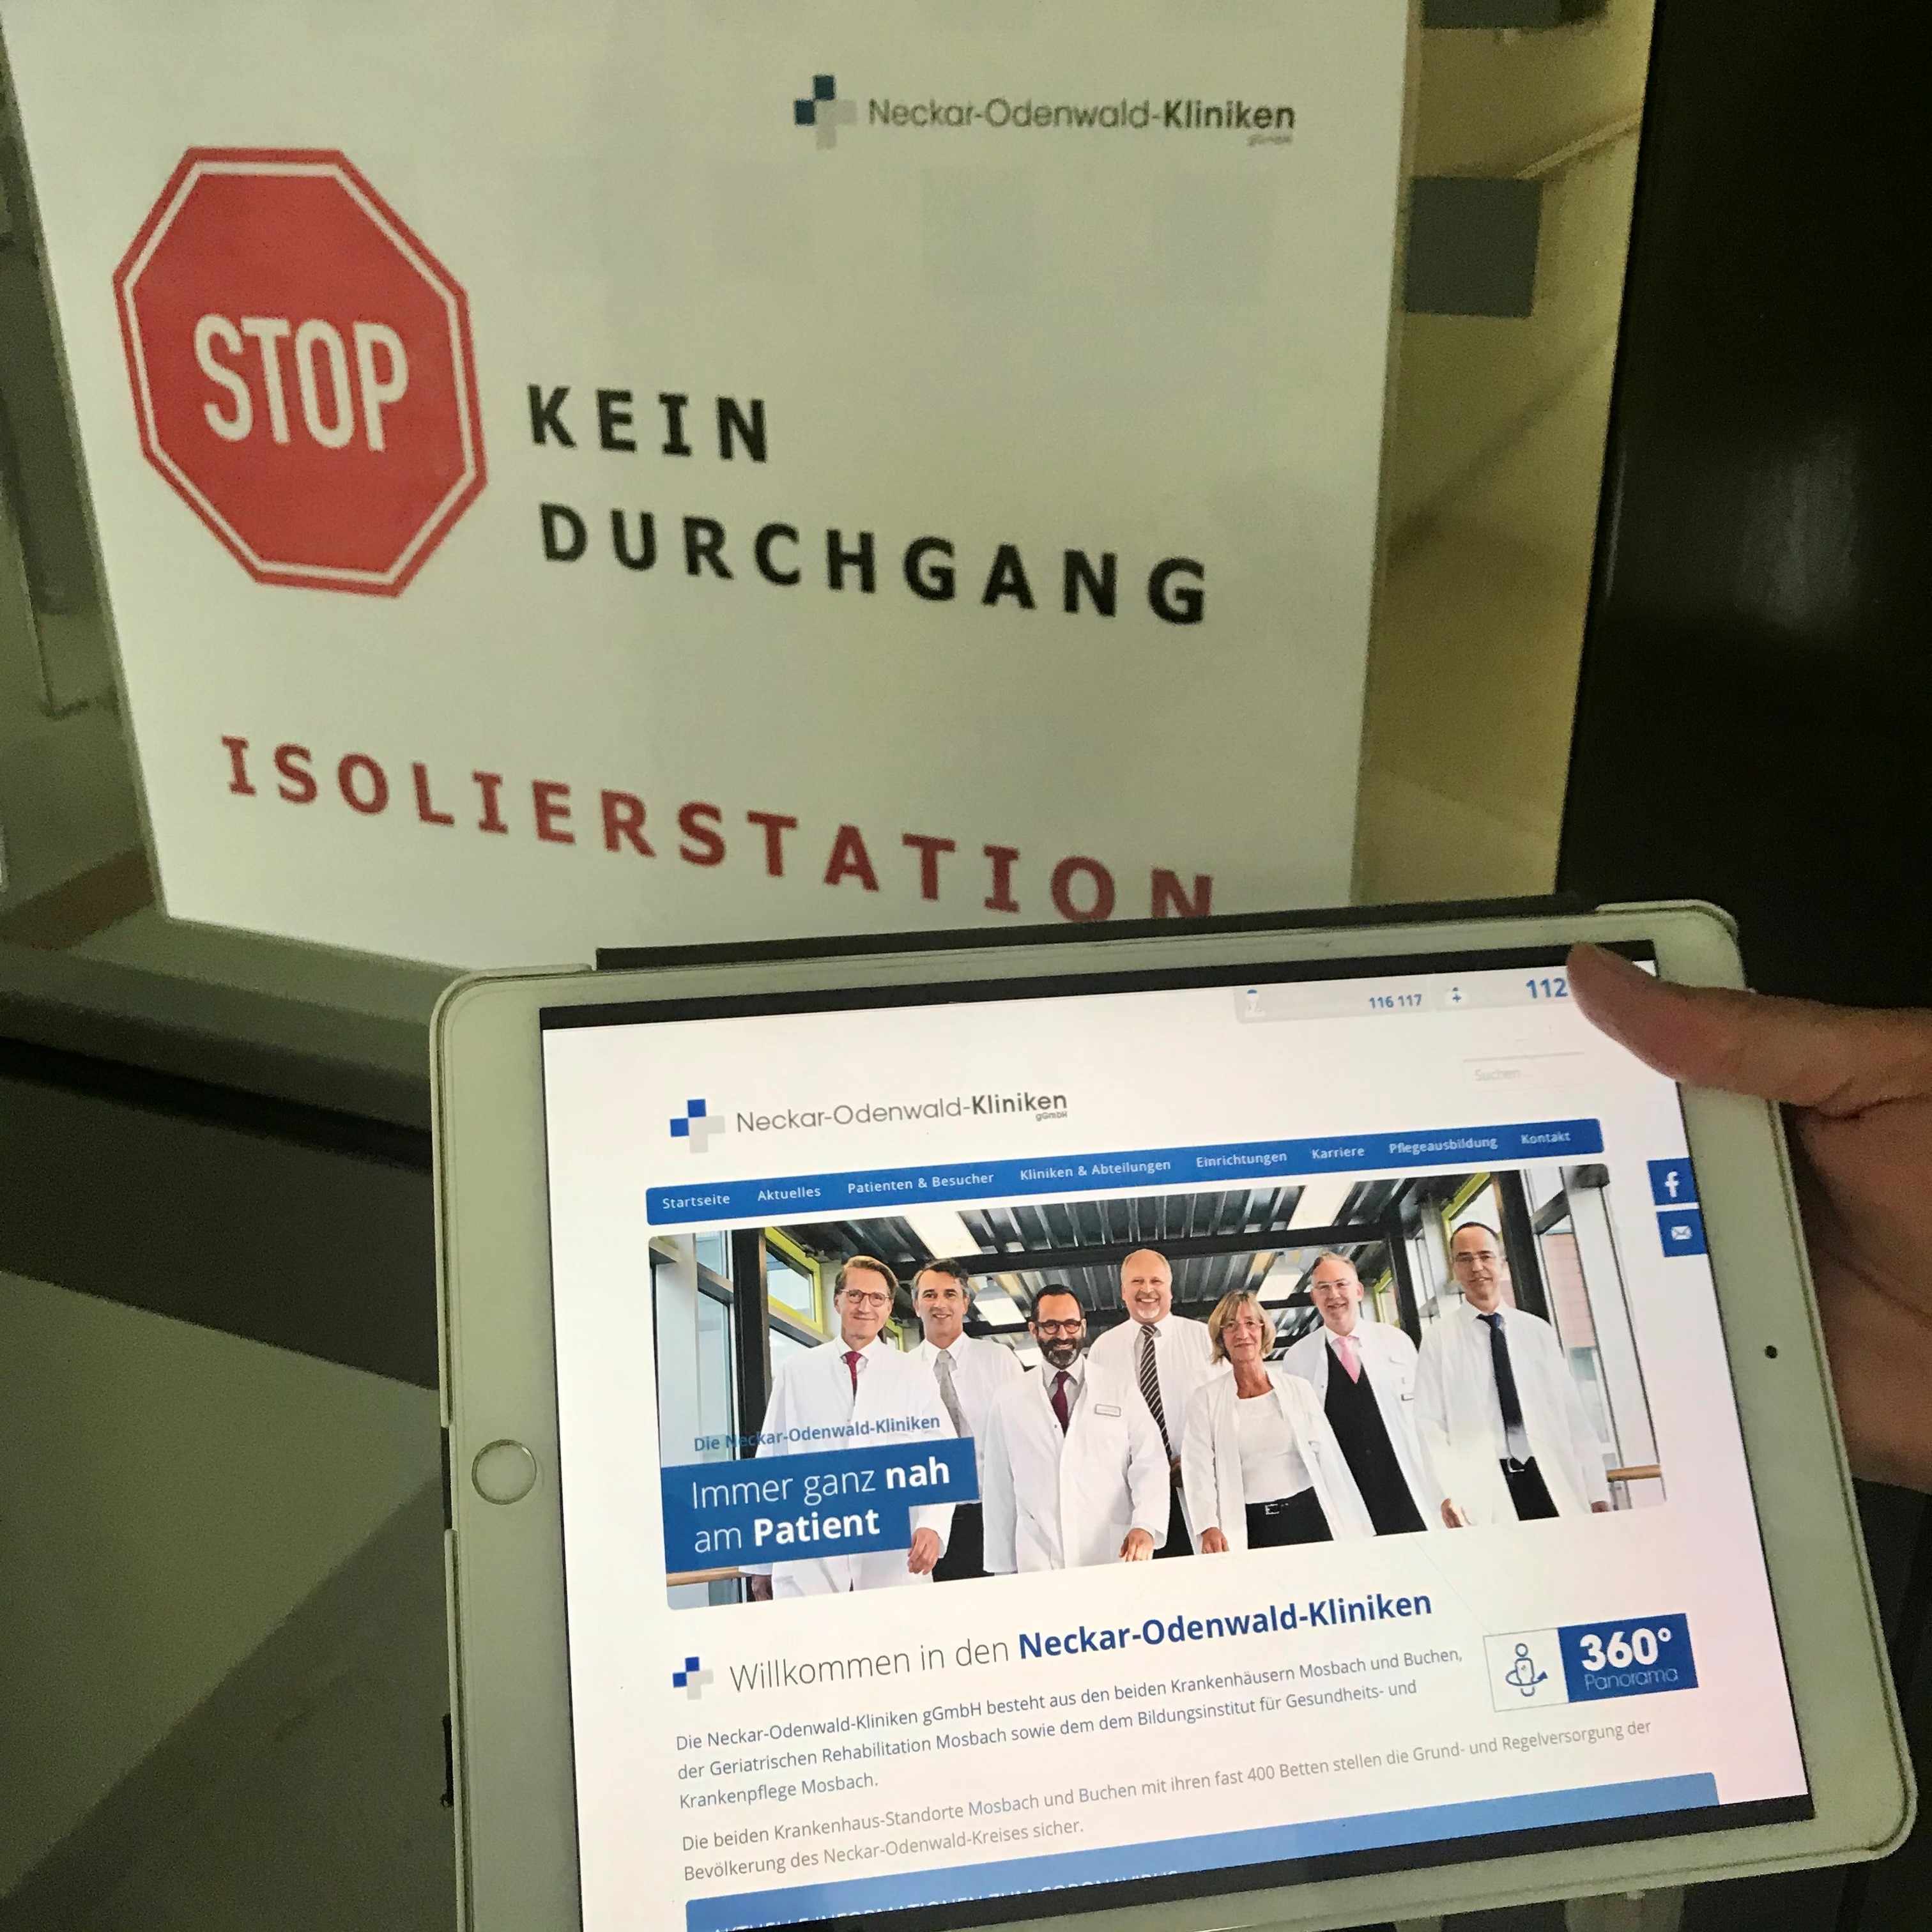 IPad mit Webseite der Neckar-Odenwald-Kliniken und einem Schild "Kein Durchgang Isolierstation"